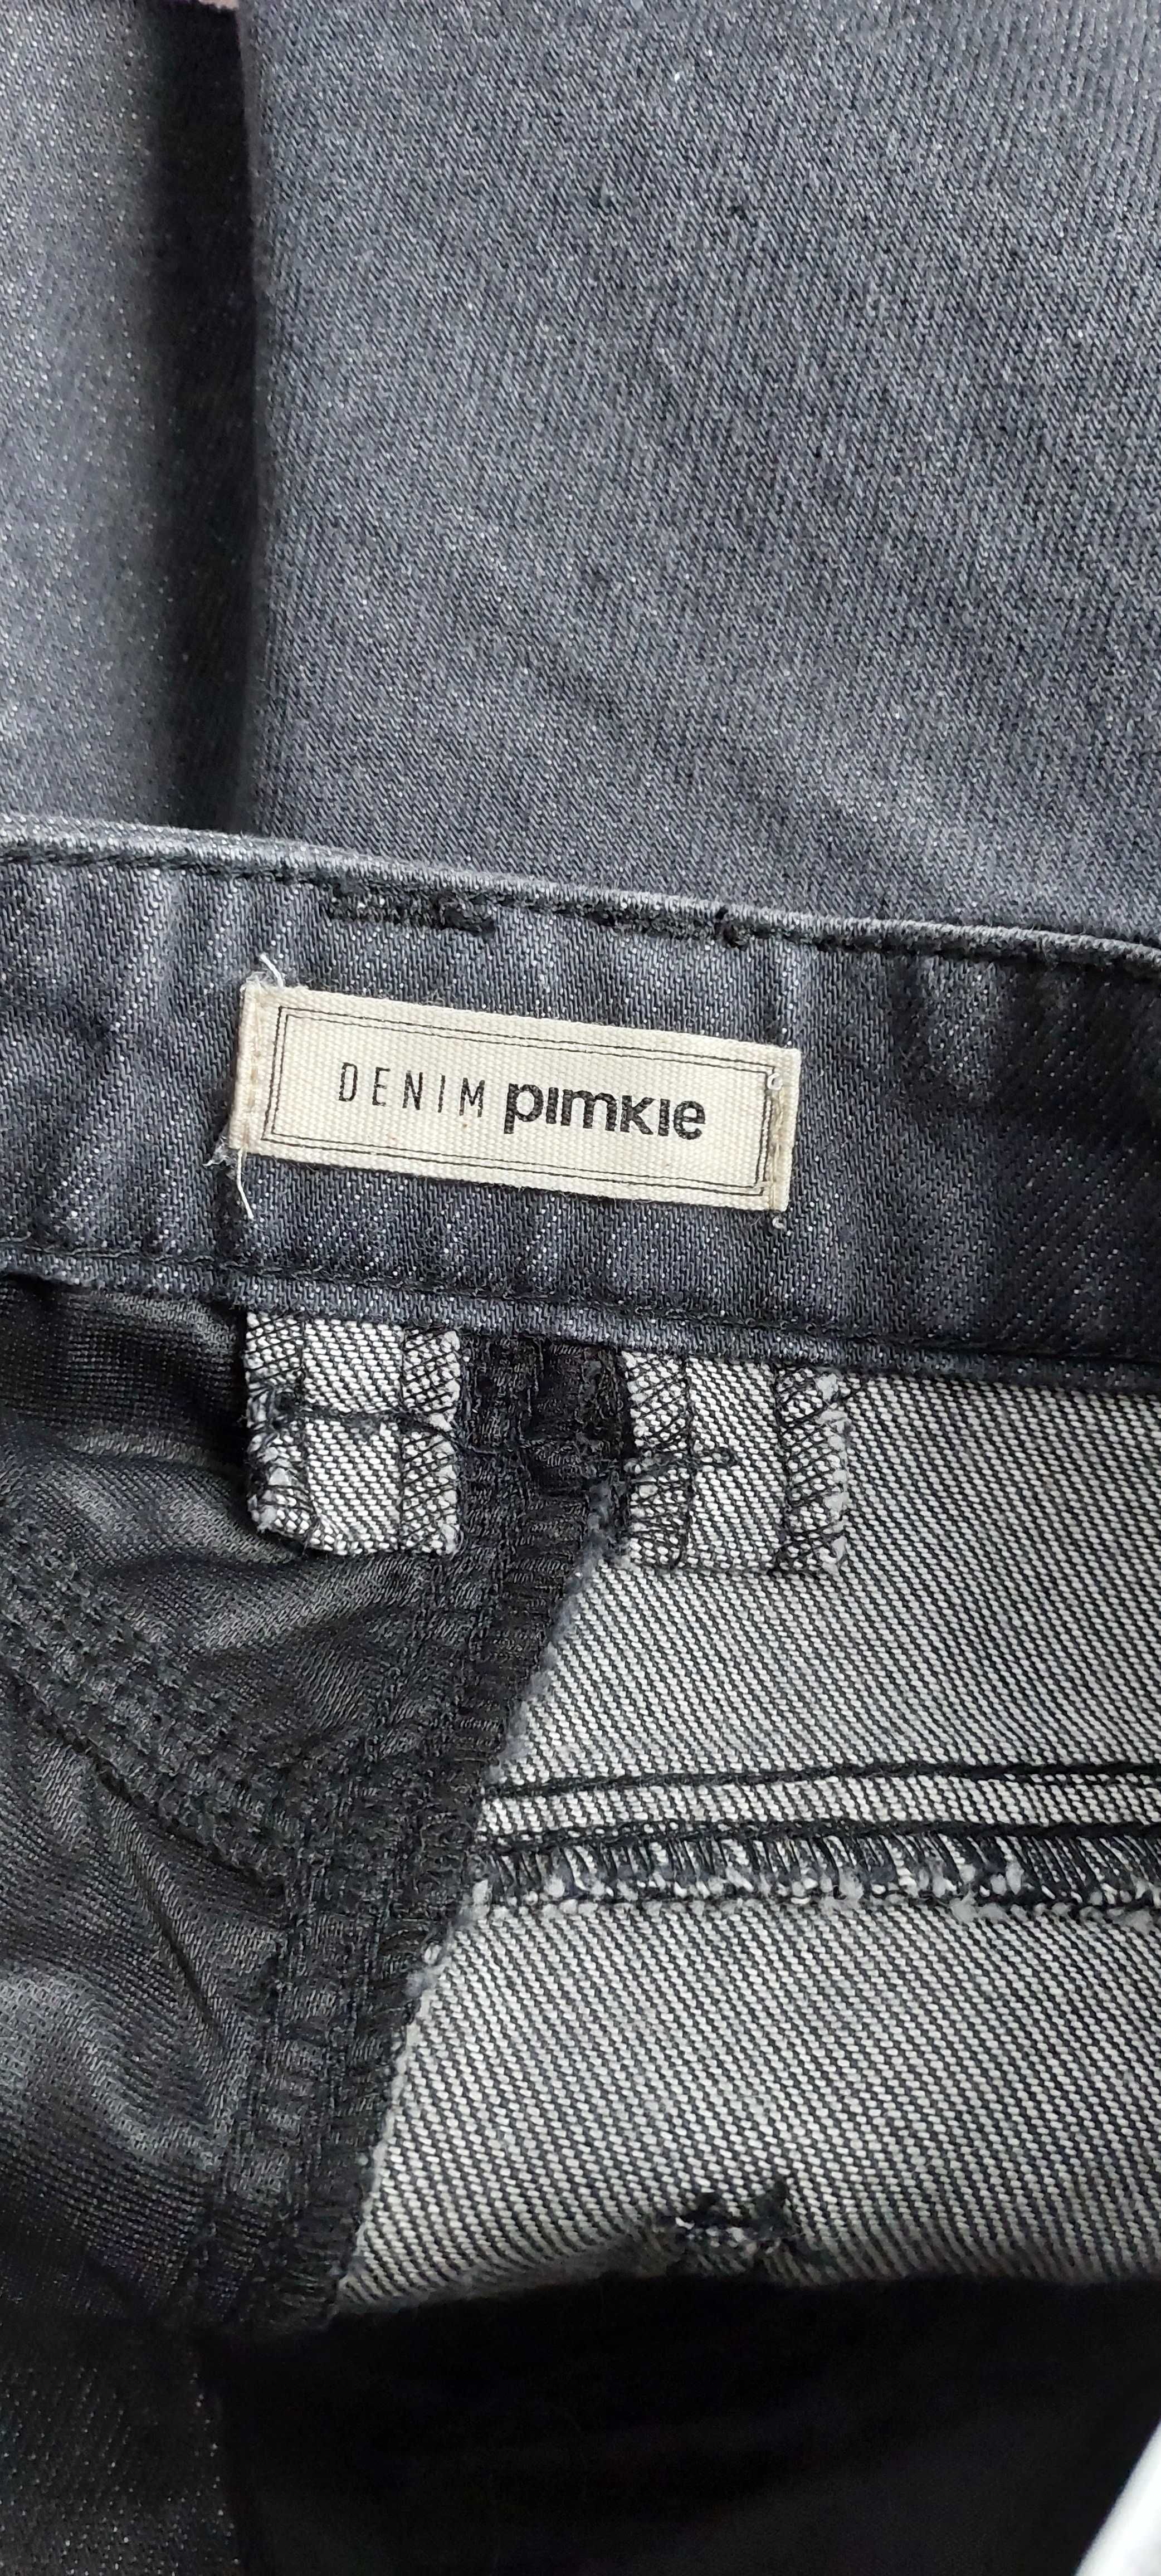 Spódnica jeansowa  PIMKIE, R. 34